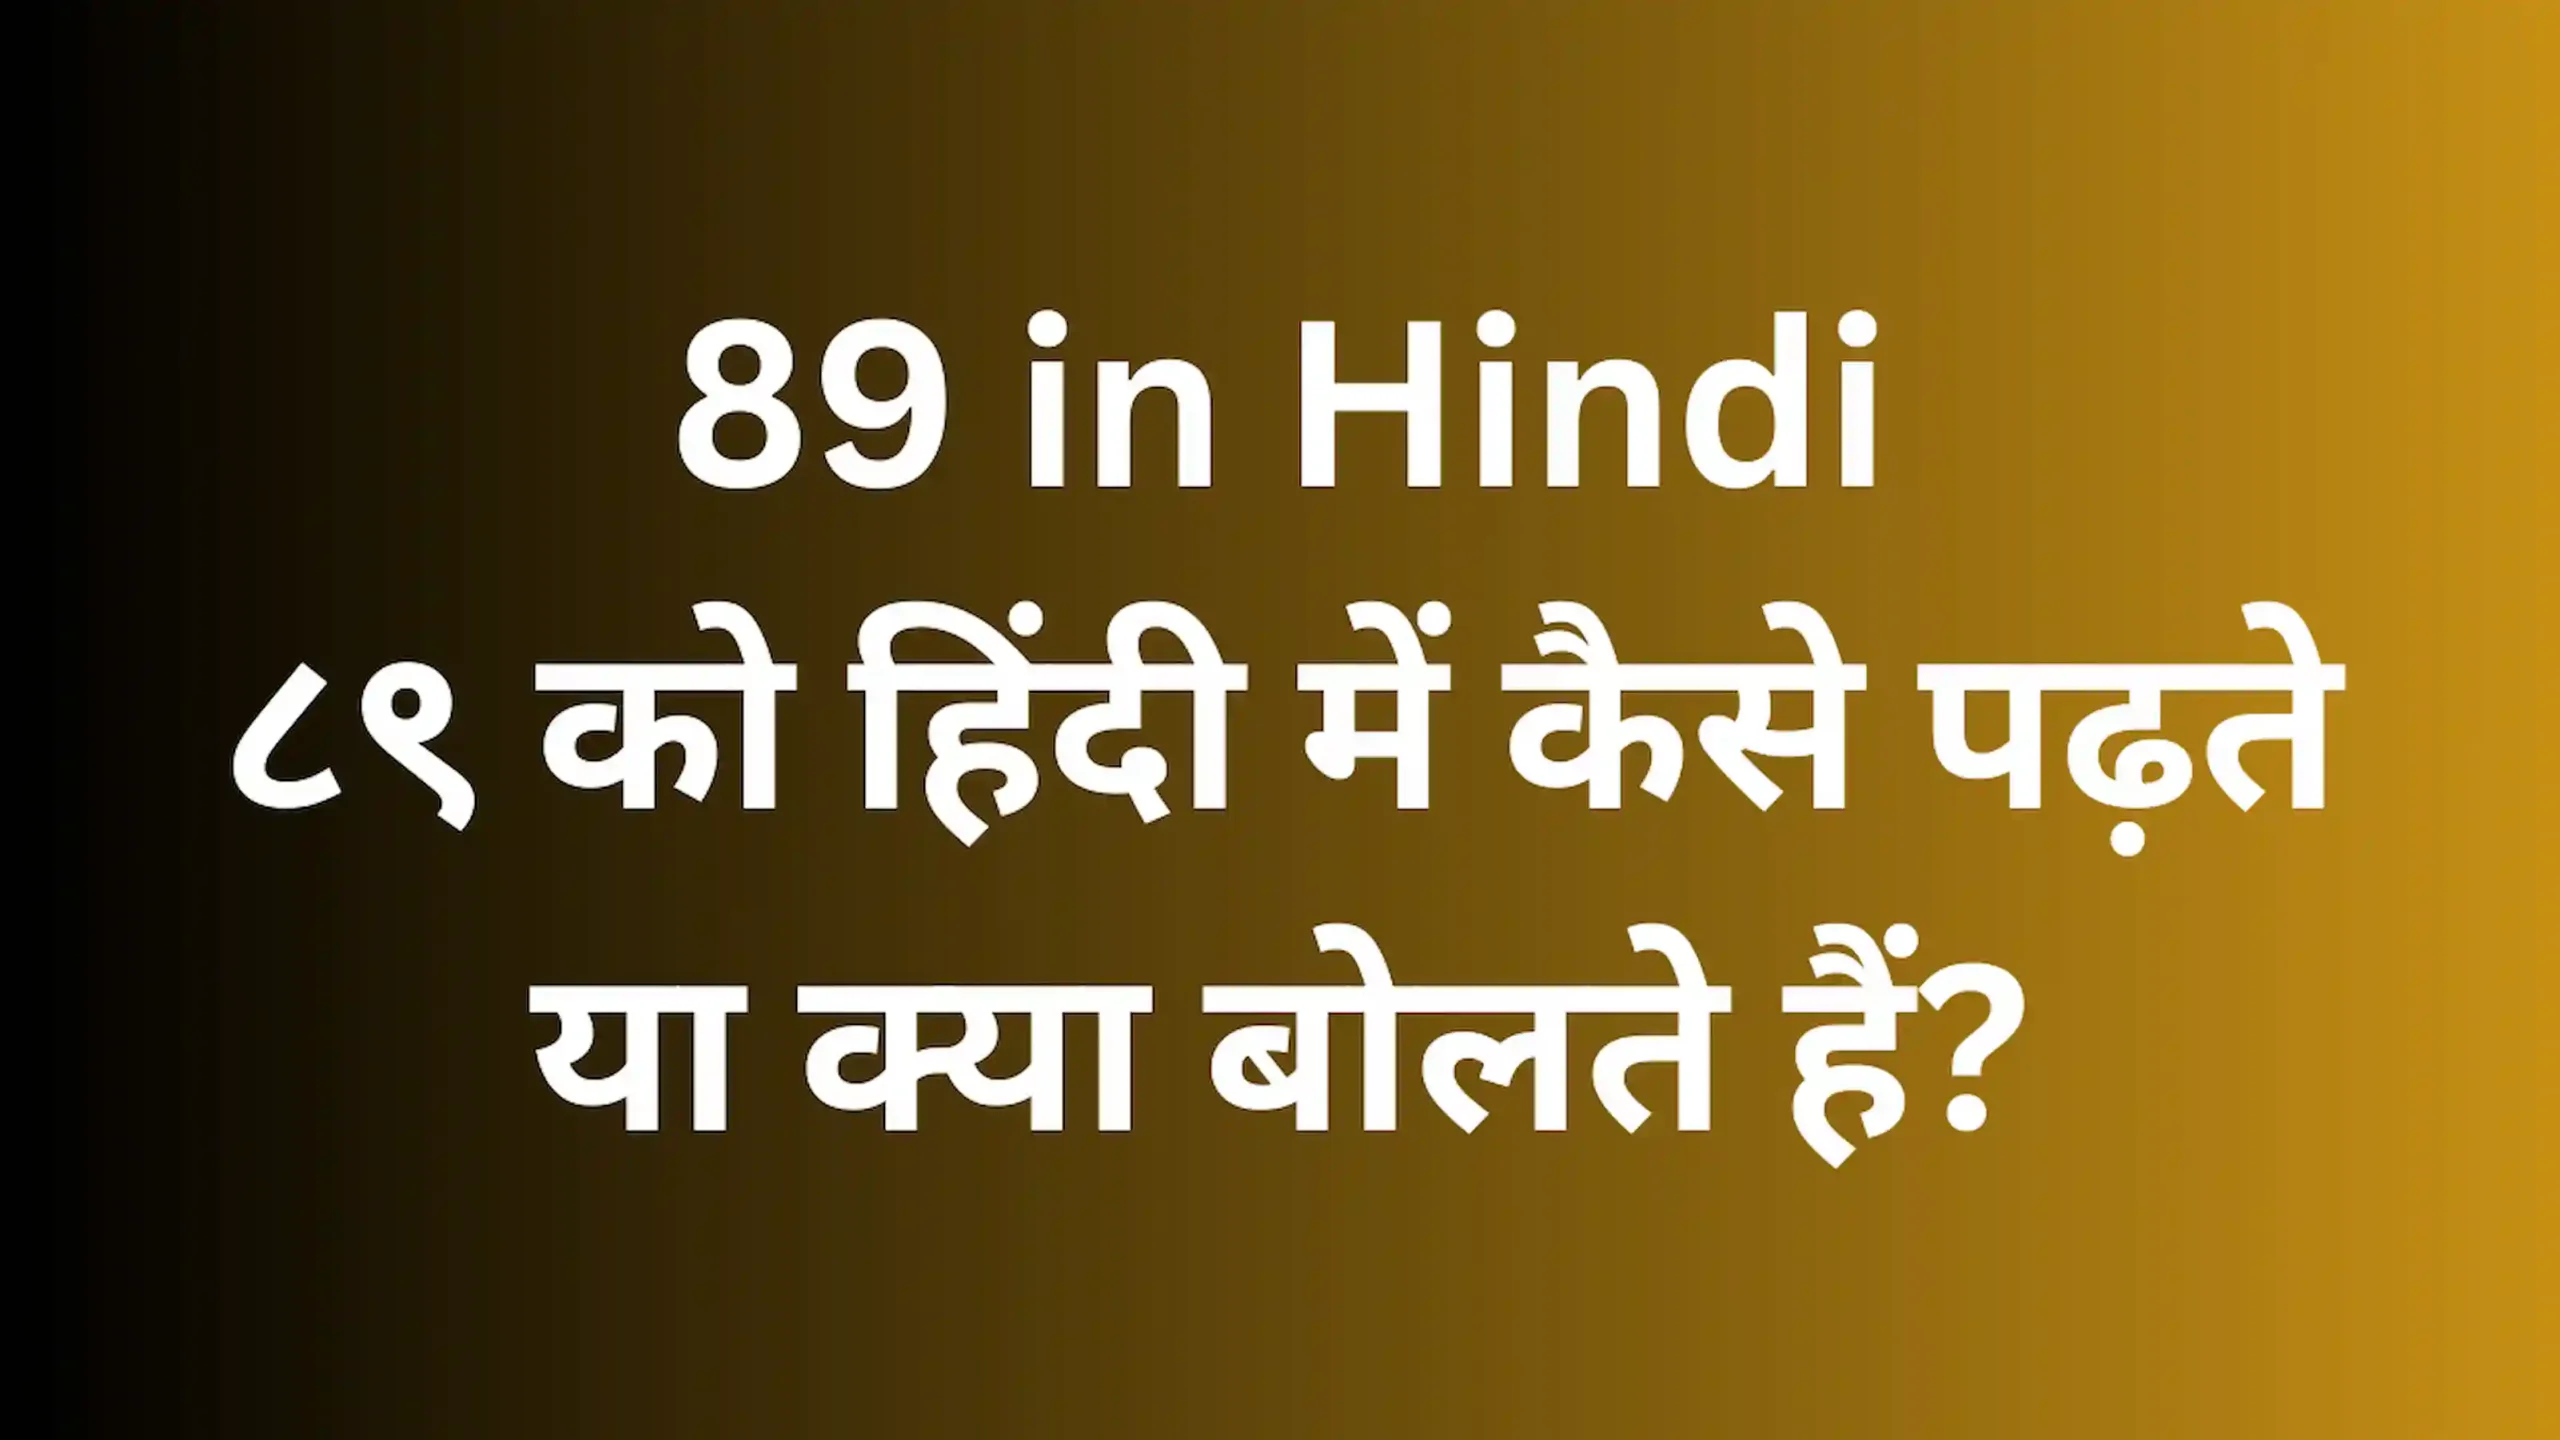 89 in Hindi - ८९ को हिंदी में कैसे पढ़ते या क्या बोलते हैं?